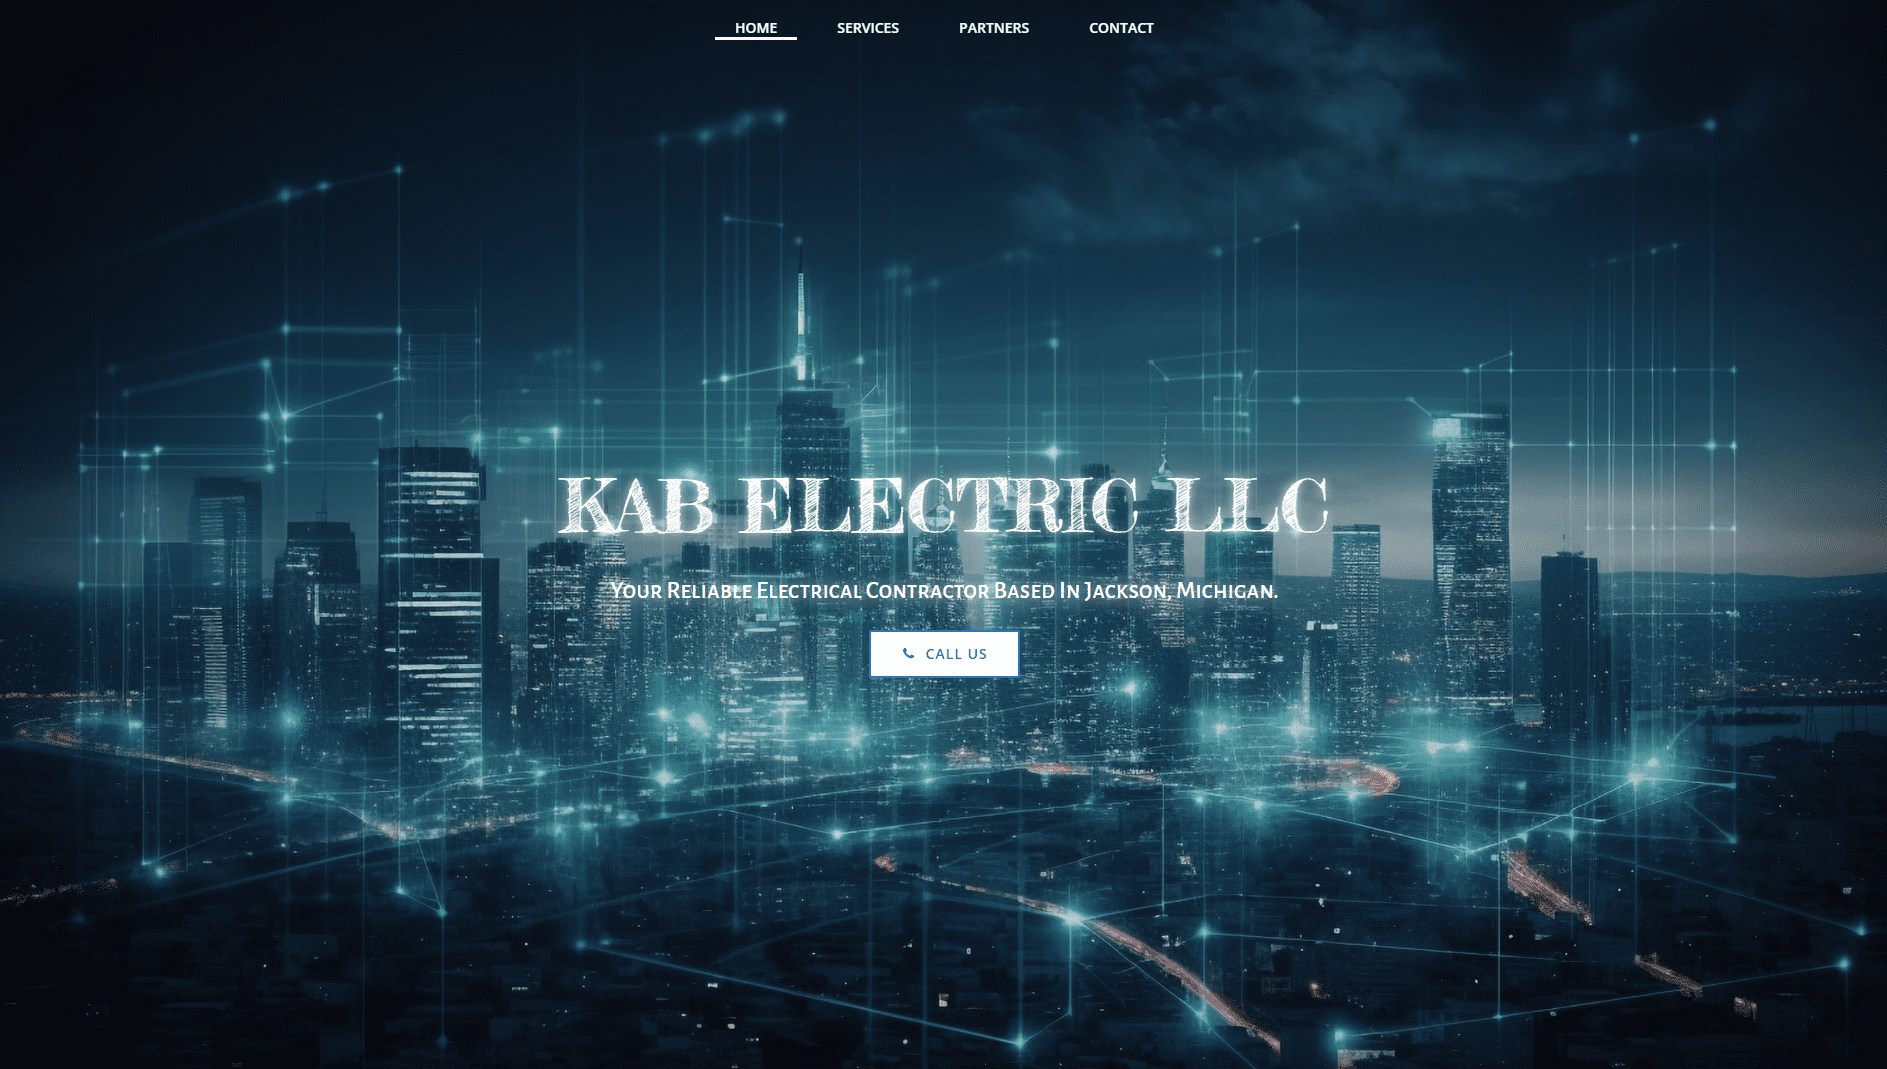 KAB Electric